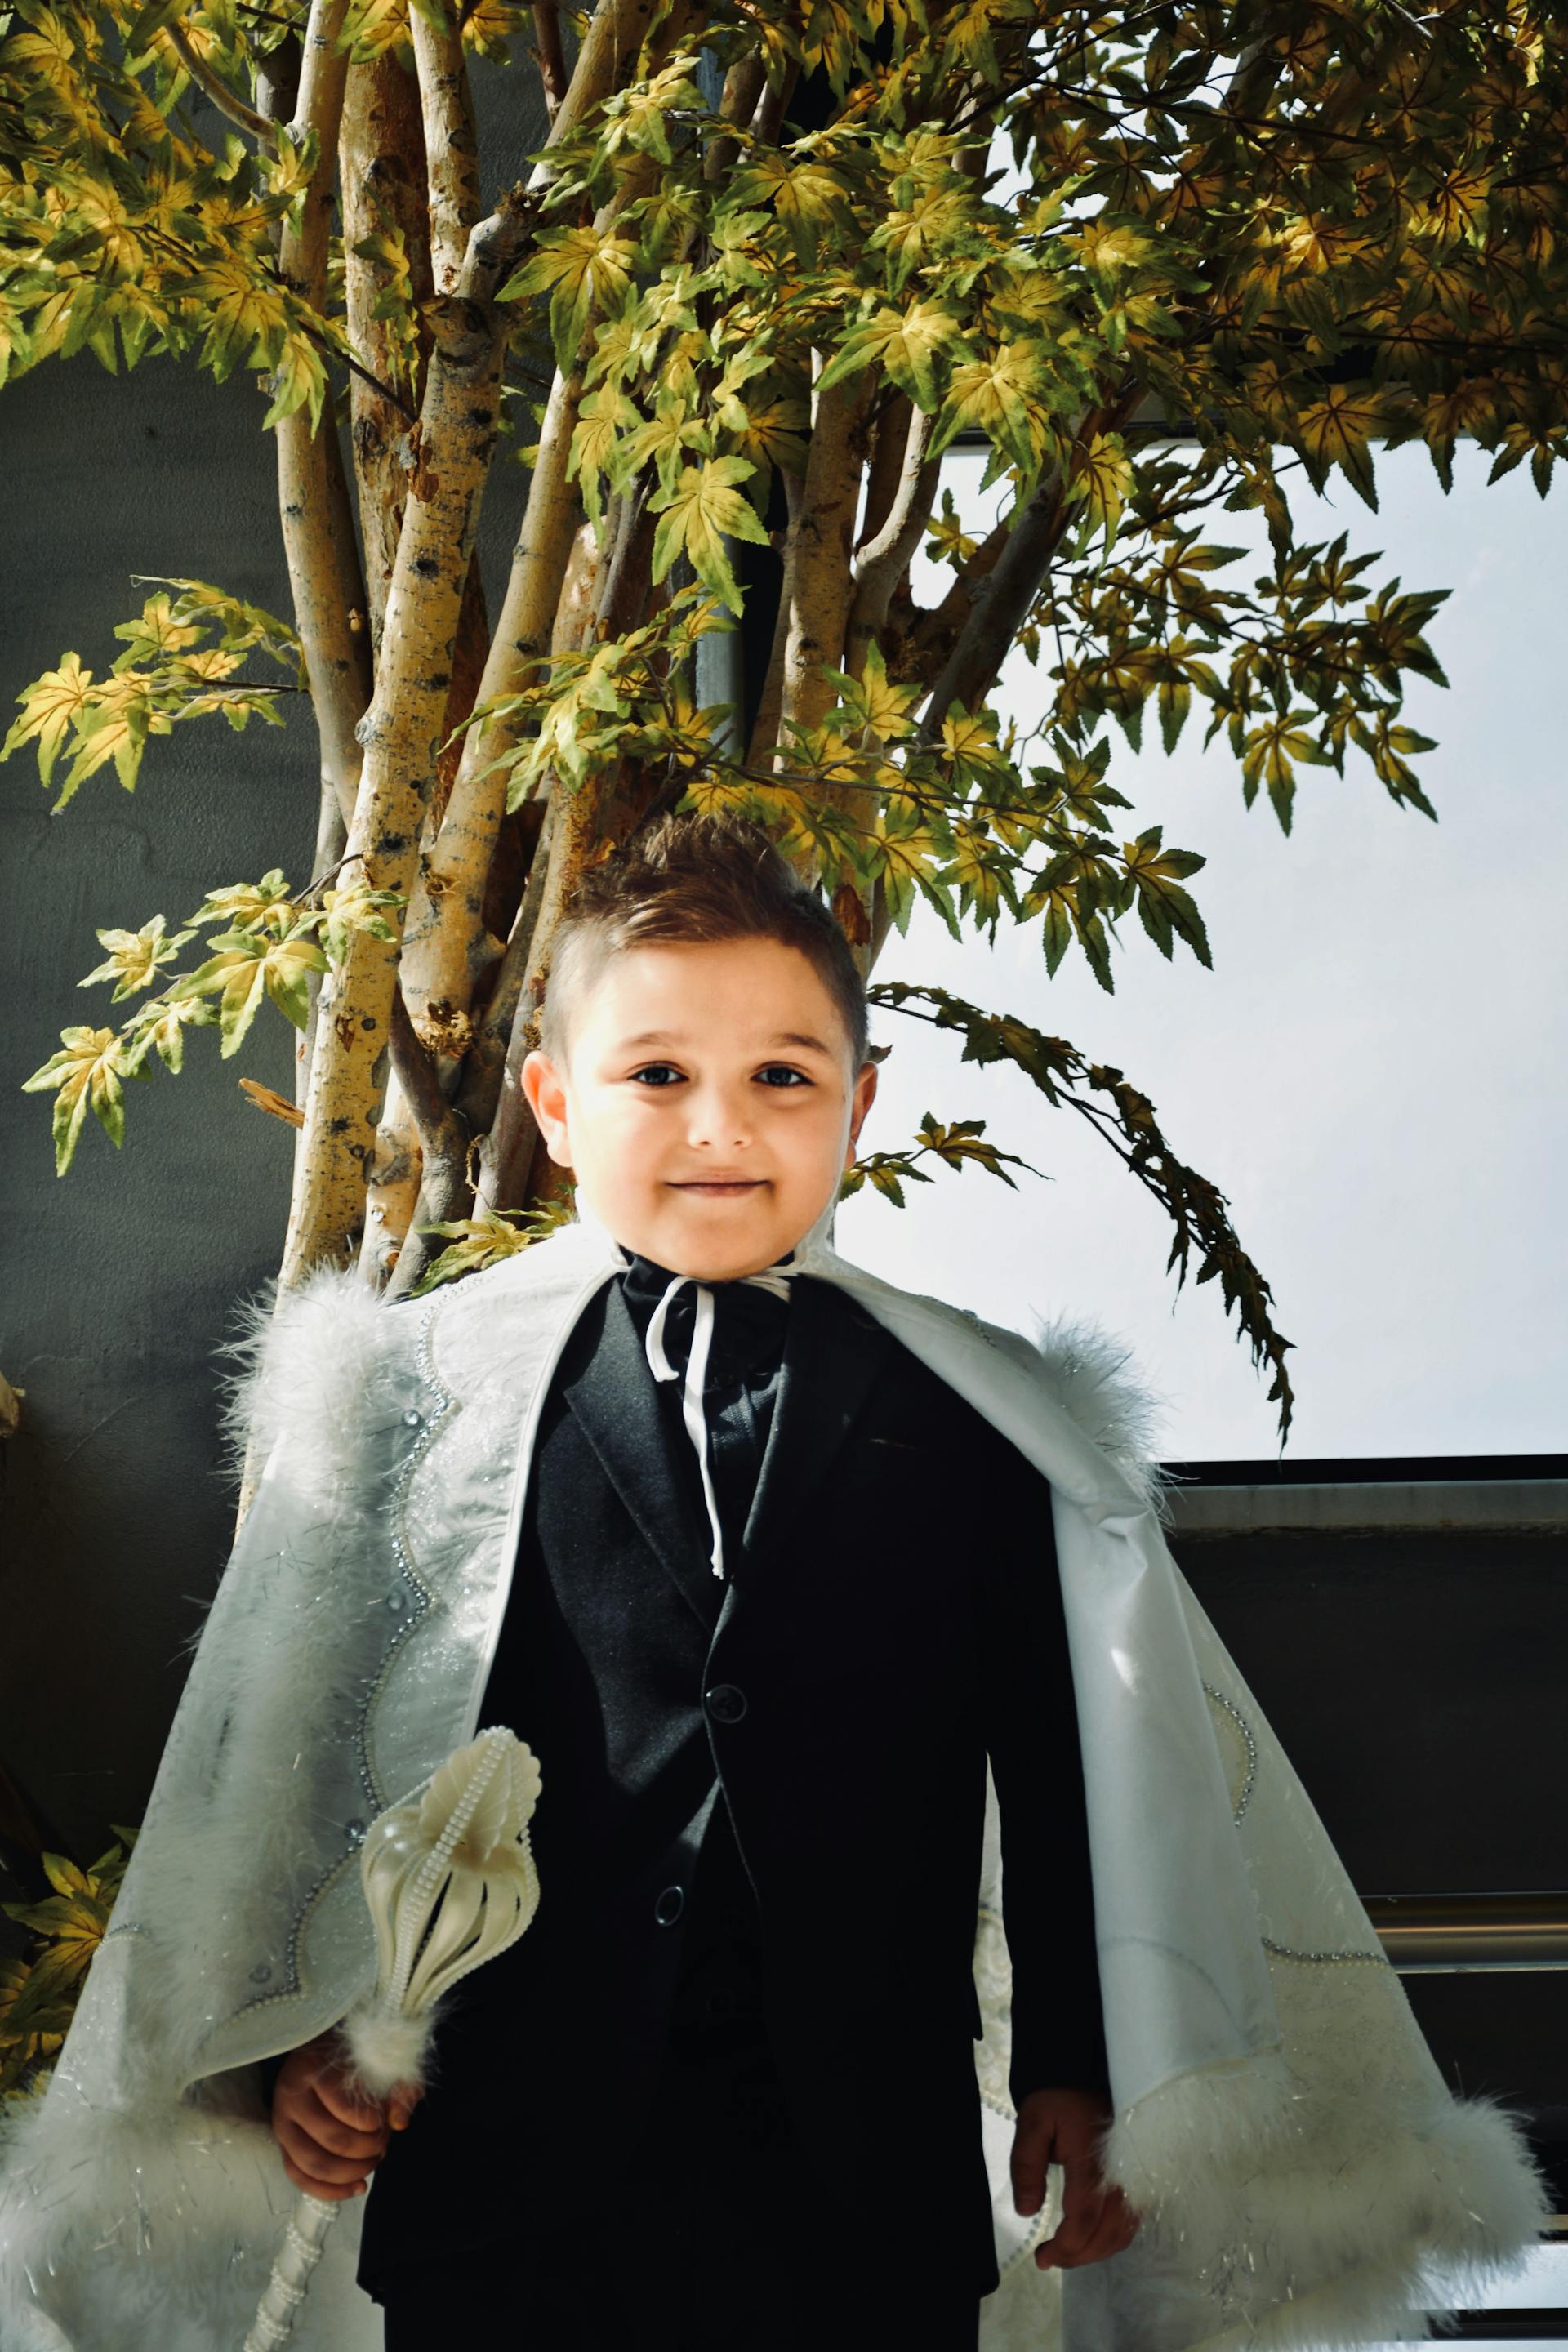 A little boy in a suit | Source: Pexels